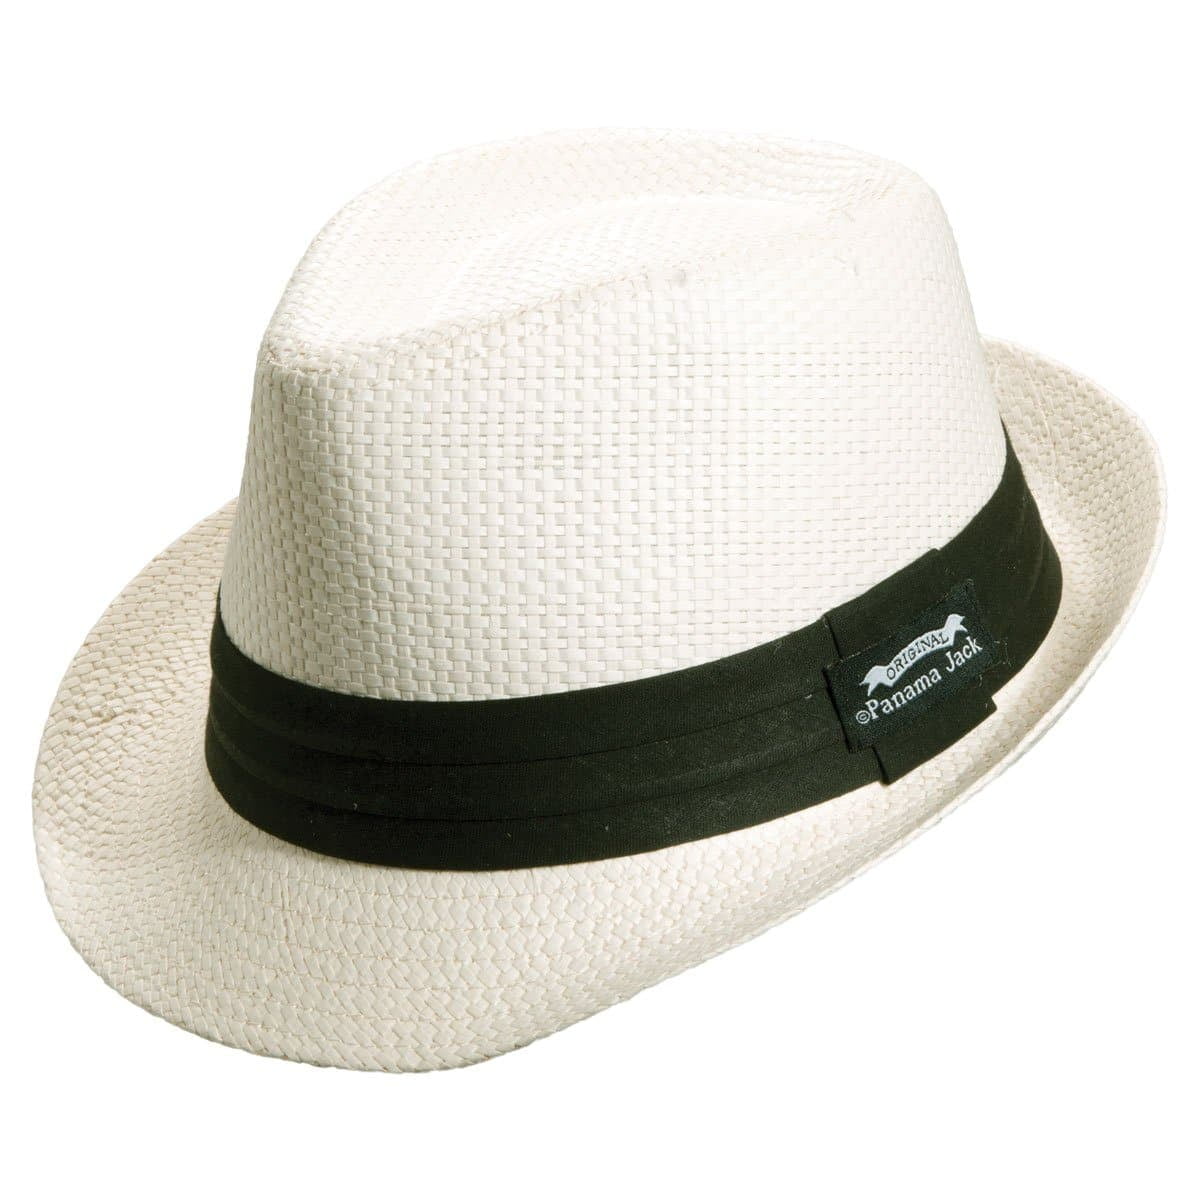 Panama Jack Solid Ribbon Fedora Hat with Black Band (Ivory, Large) 